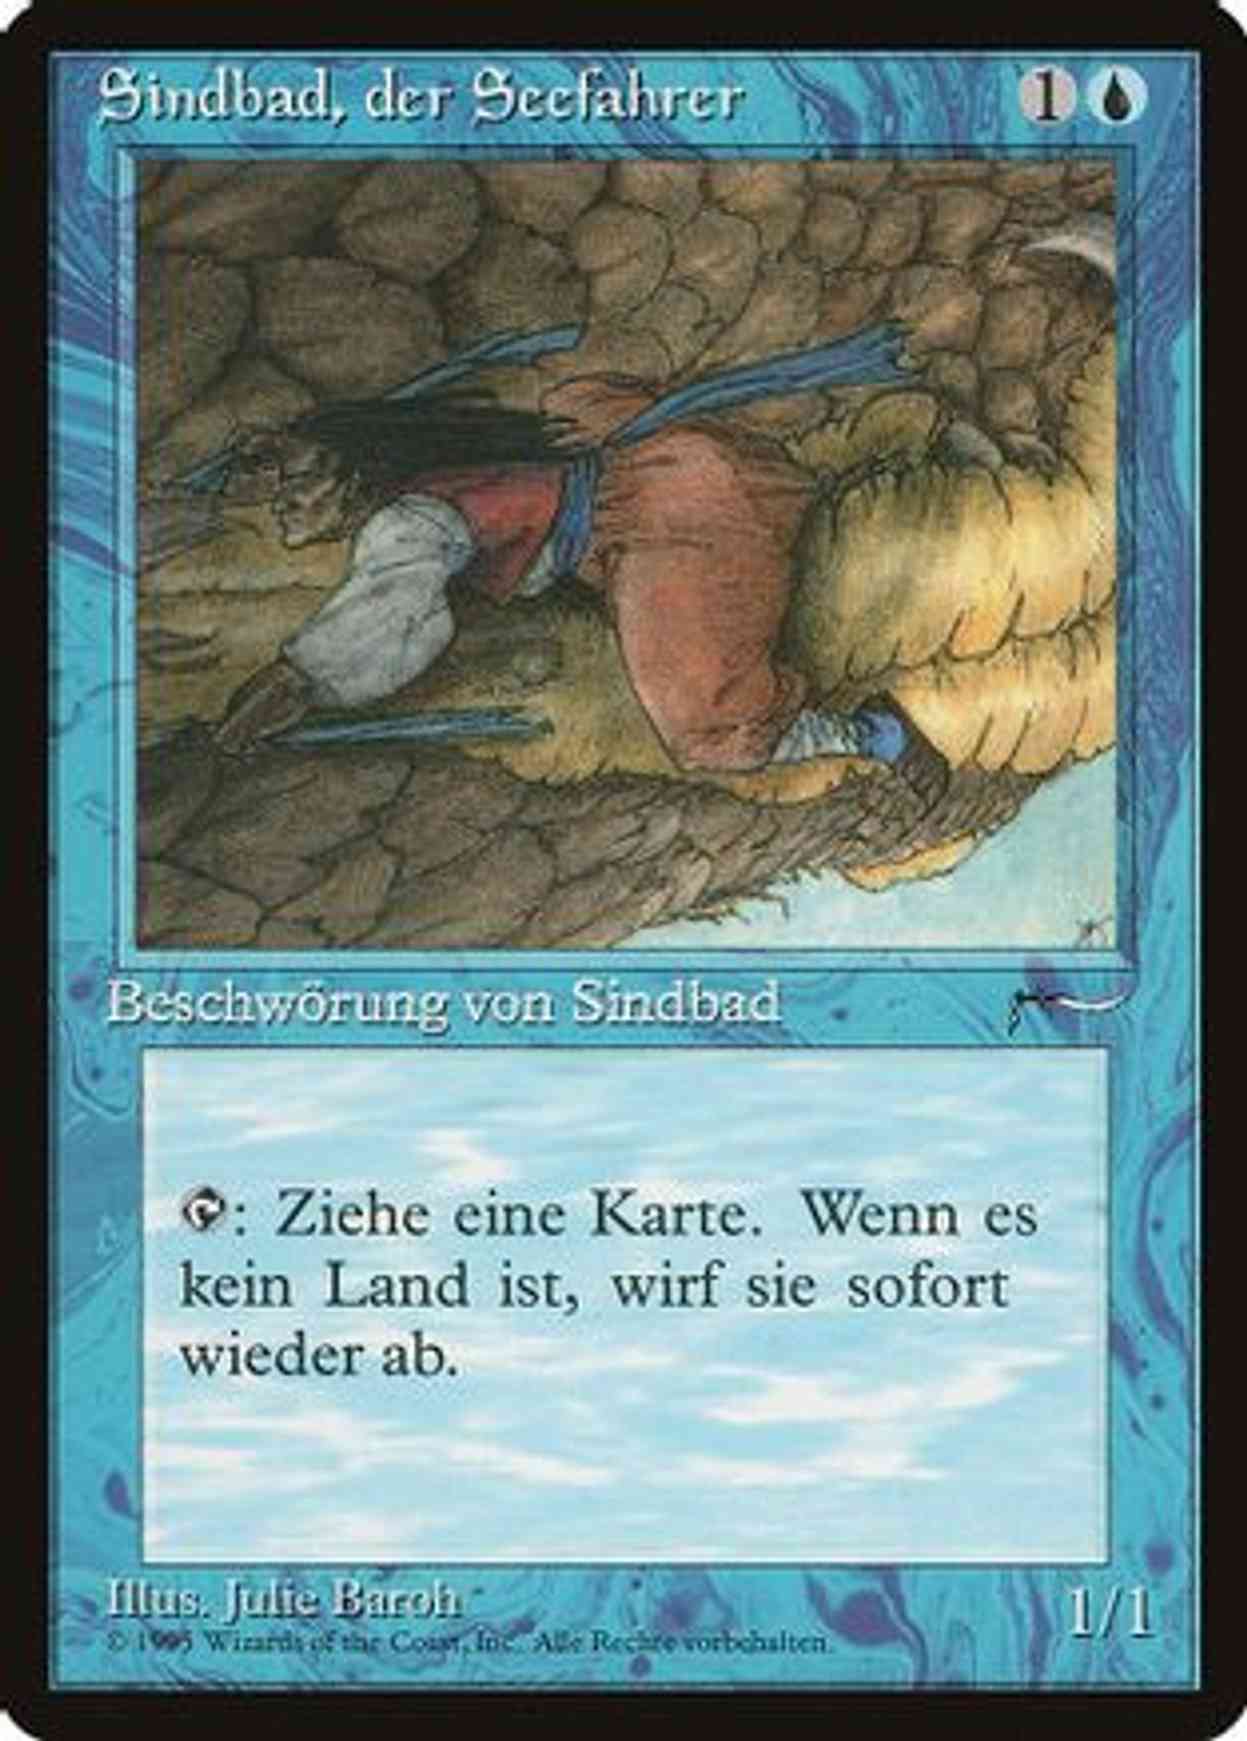 Sindbad (German) - "Sindbad, der Seefahrer" magic card front